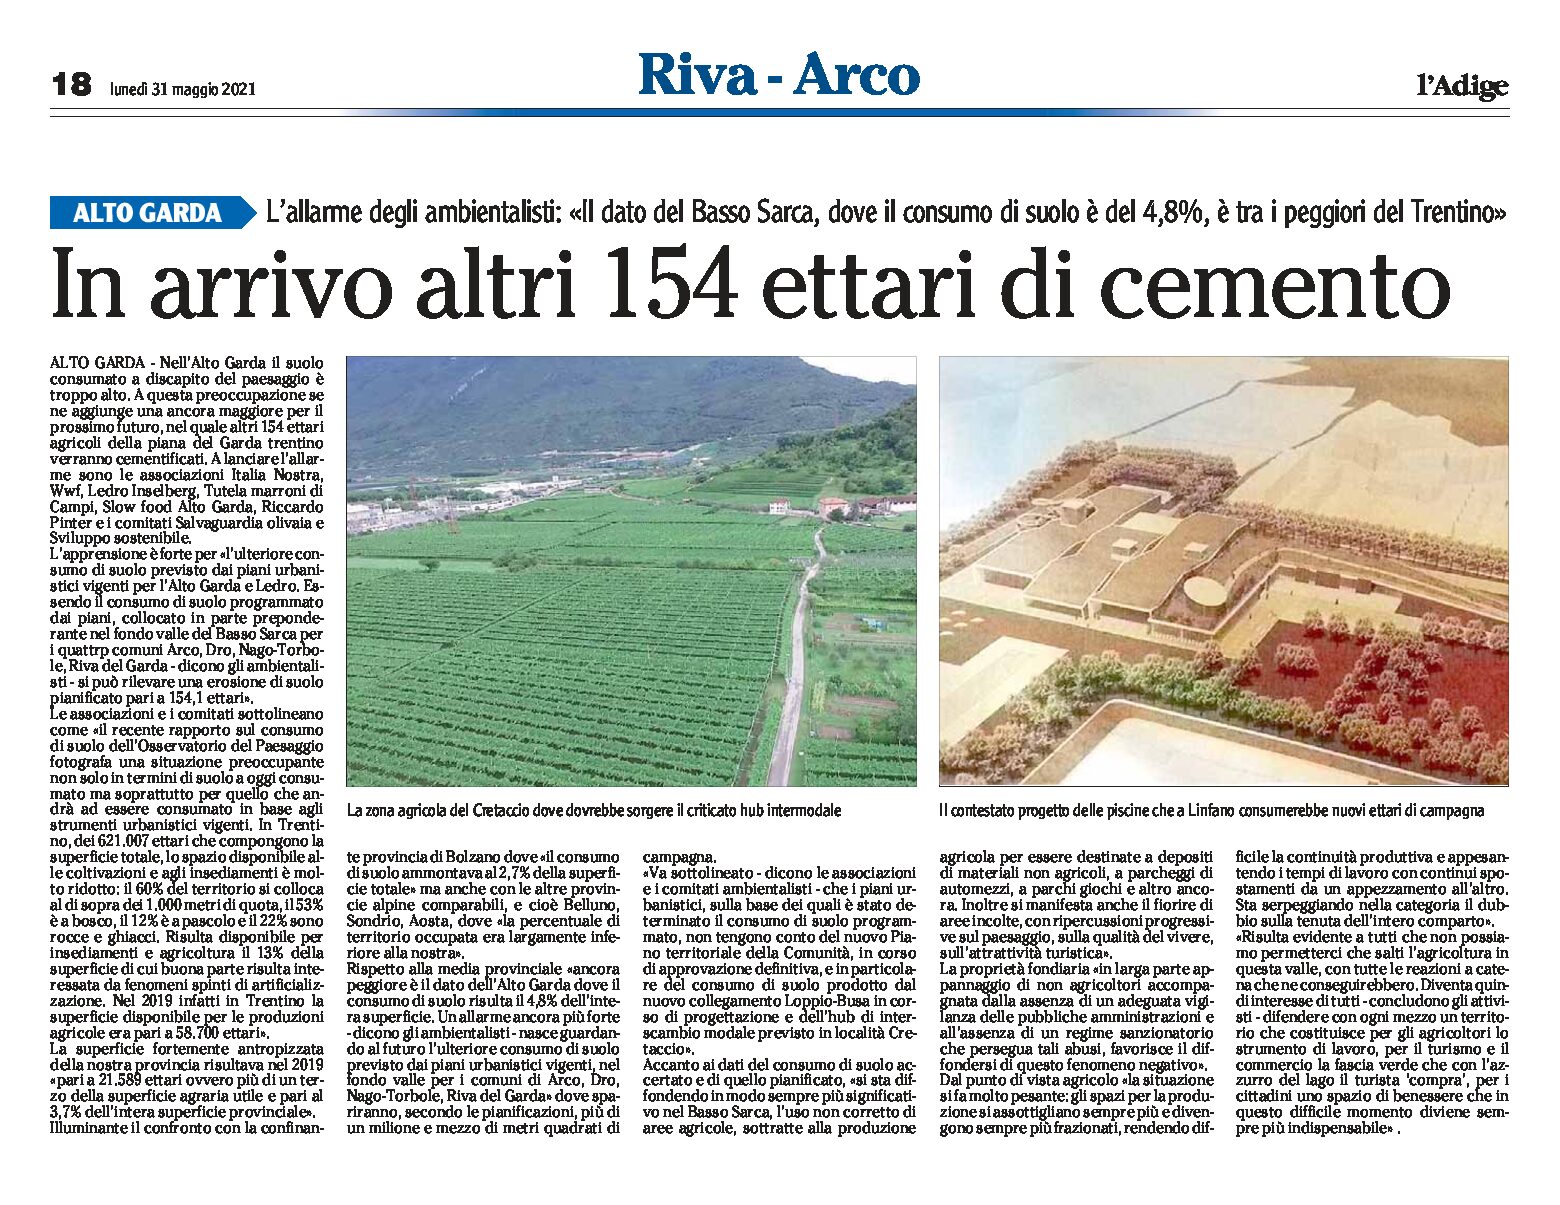 Alto Garda, Cretaccio: in arrivo altri 154 ettari di cemento